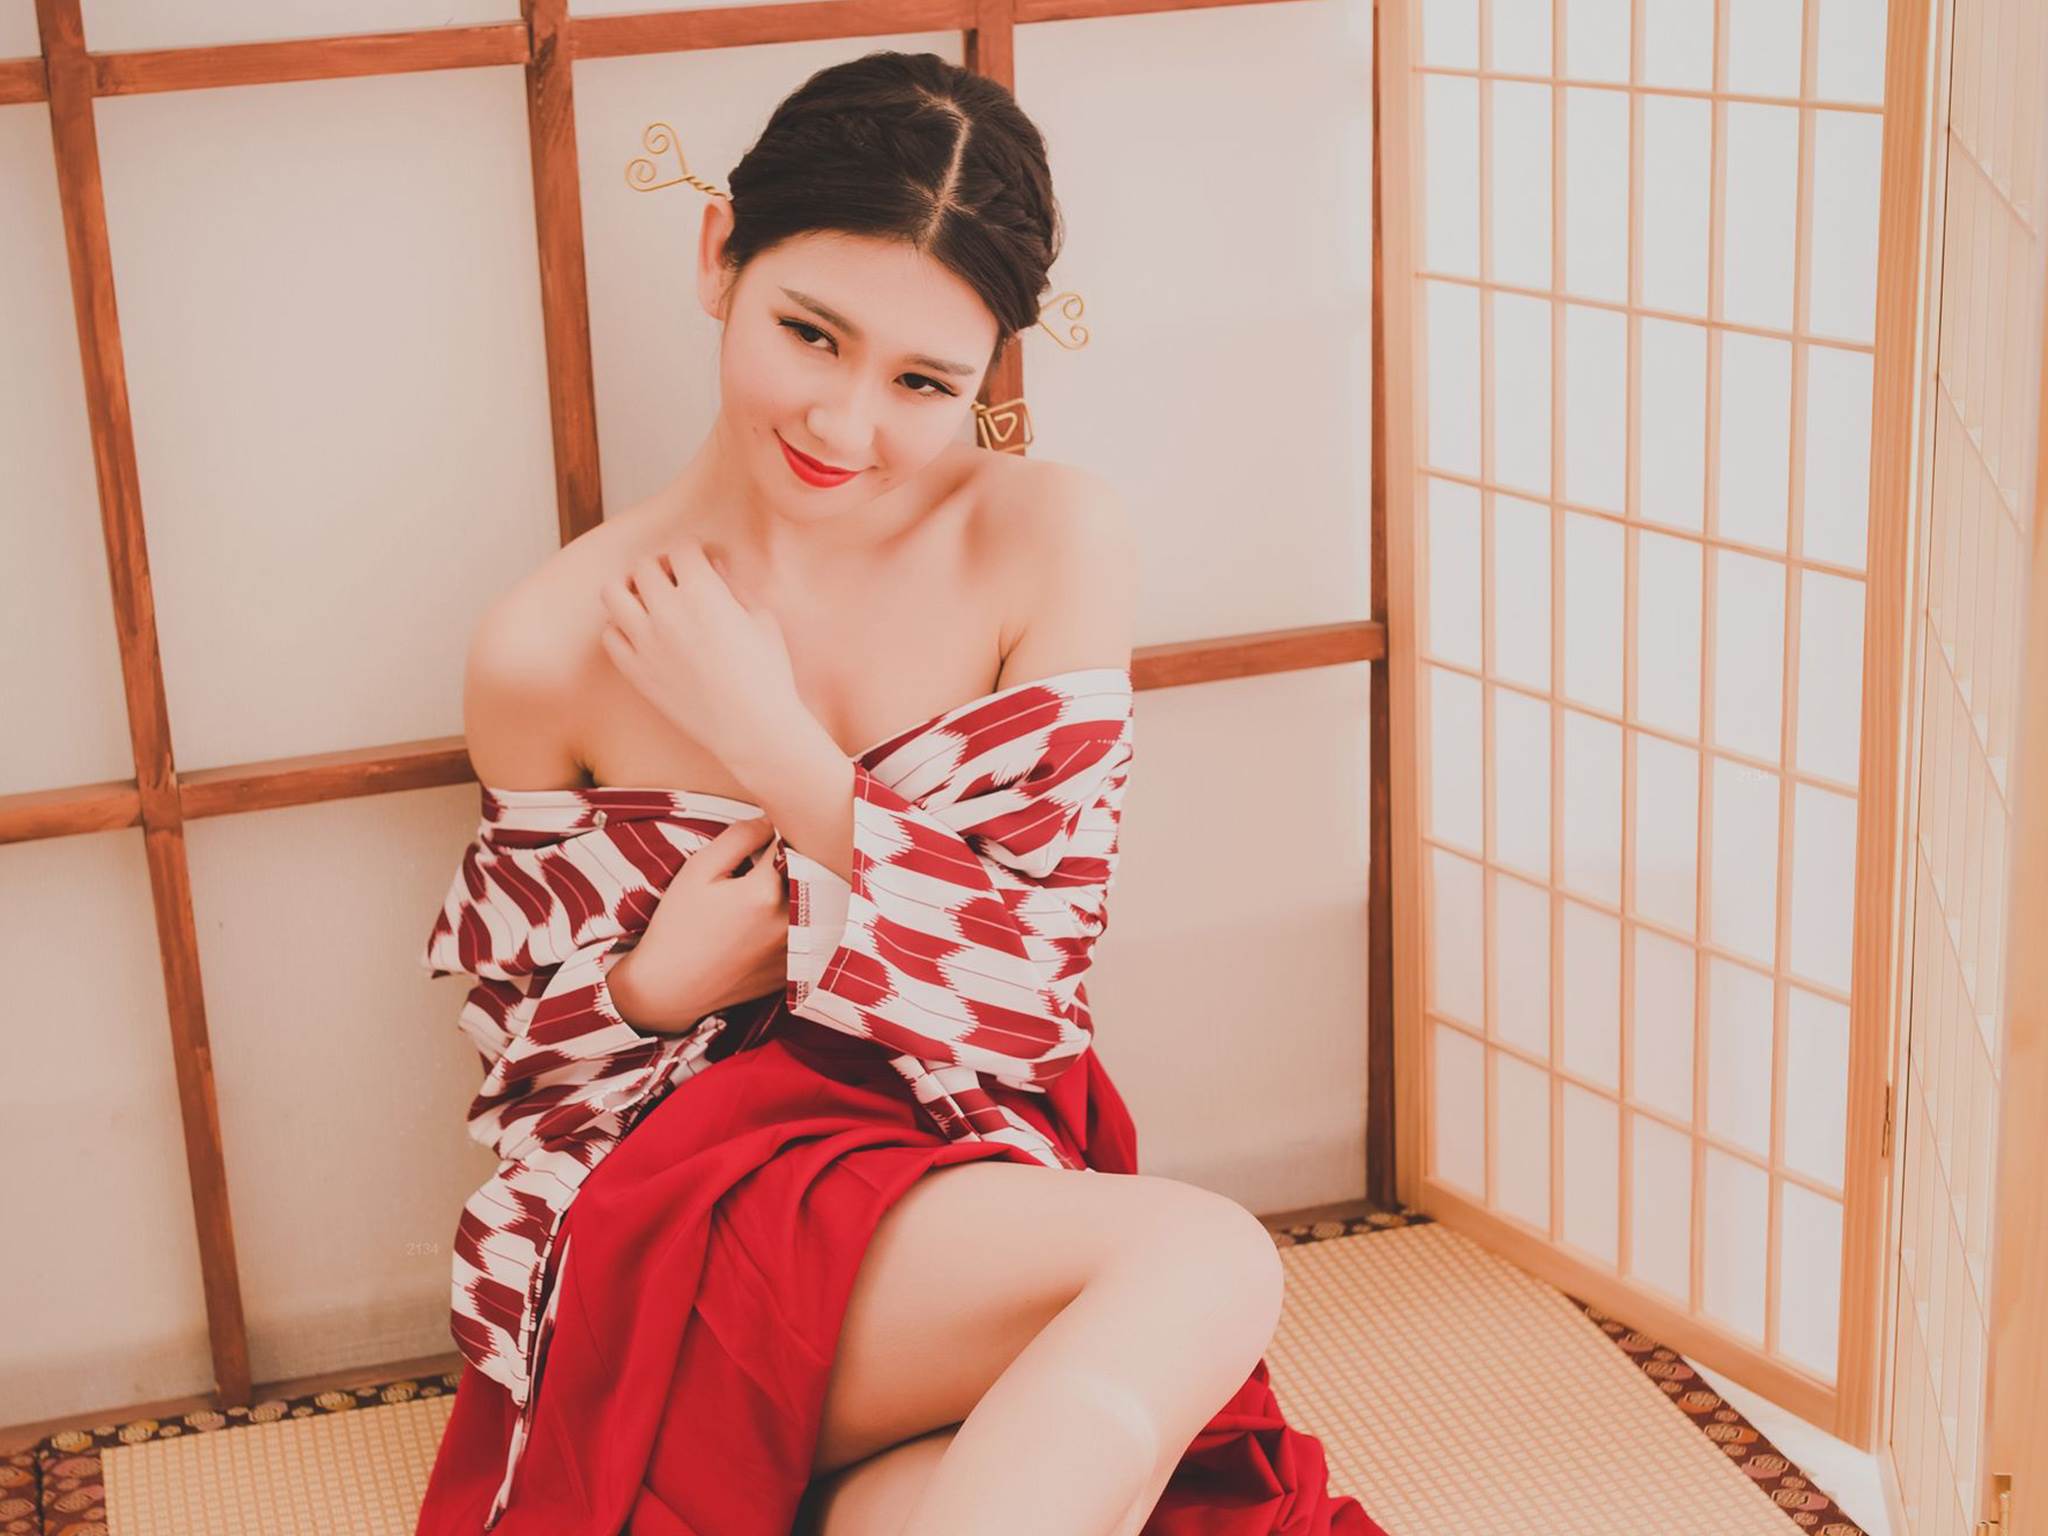 日本性感和服美女大胸乳巨骚浪写真图片平板壁纸 日本美女,和服美女,大胸美女,乳巨美女,